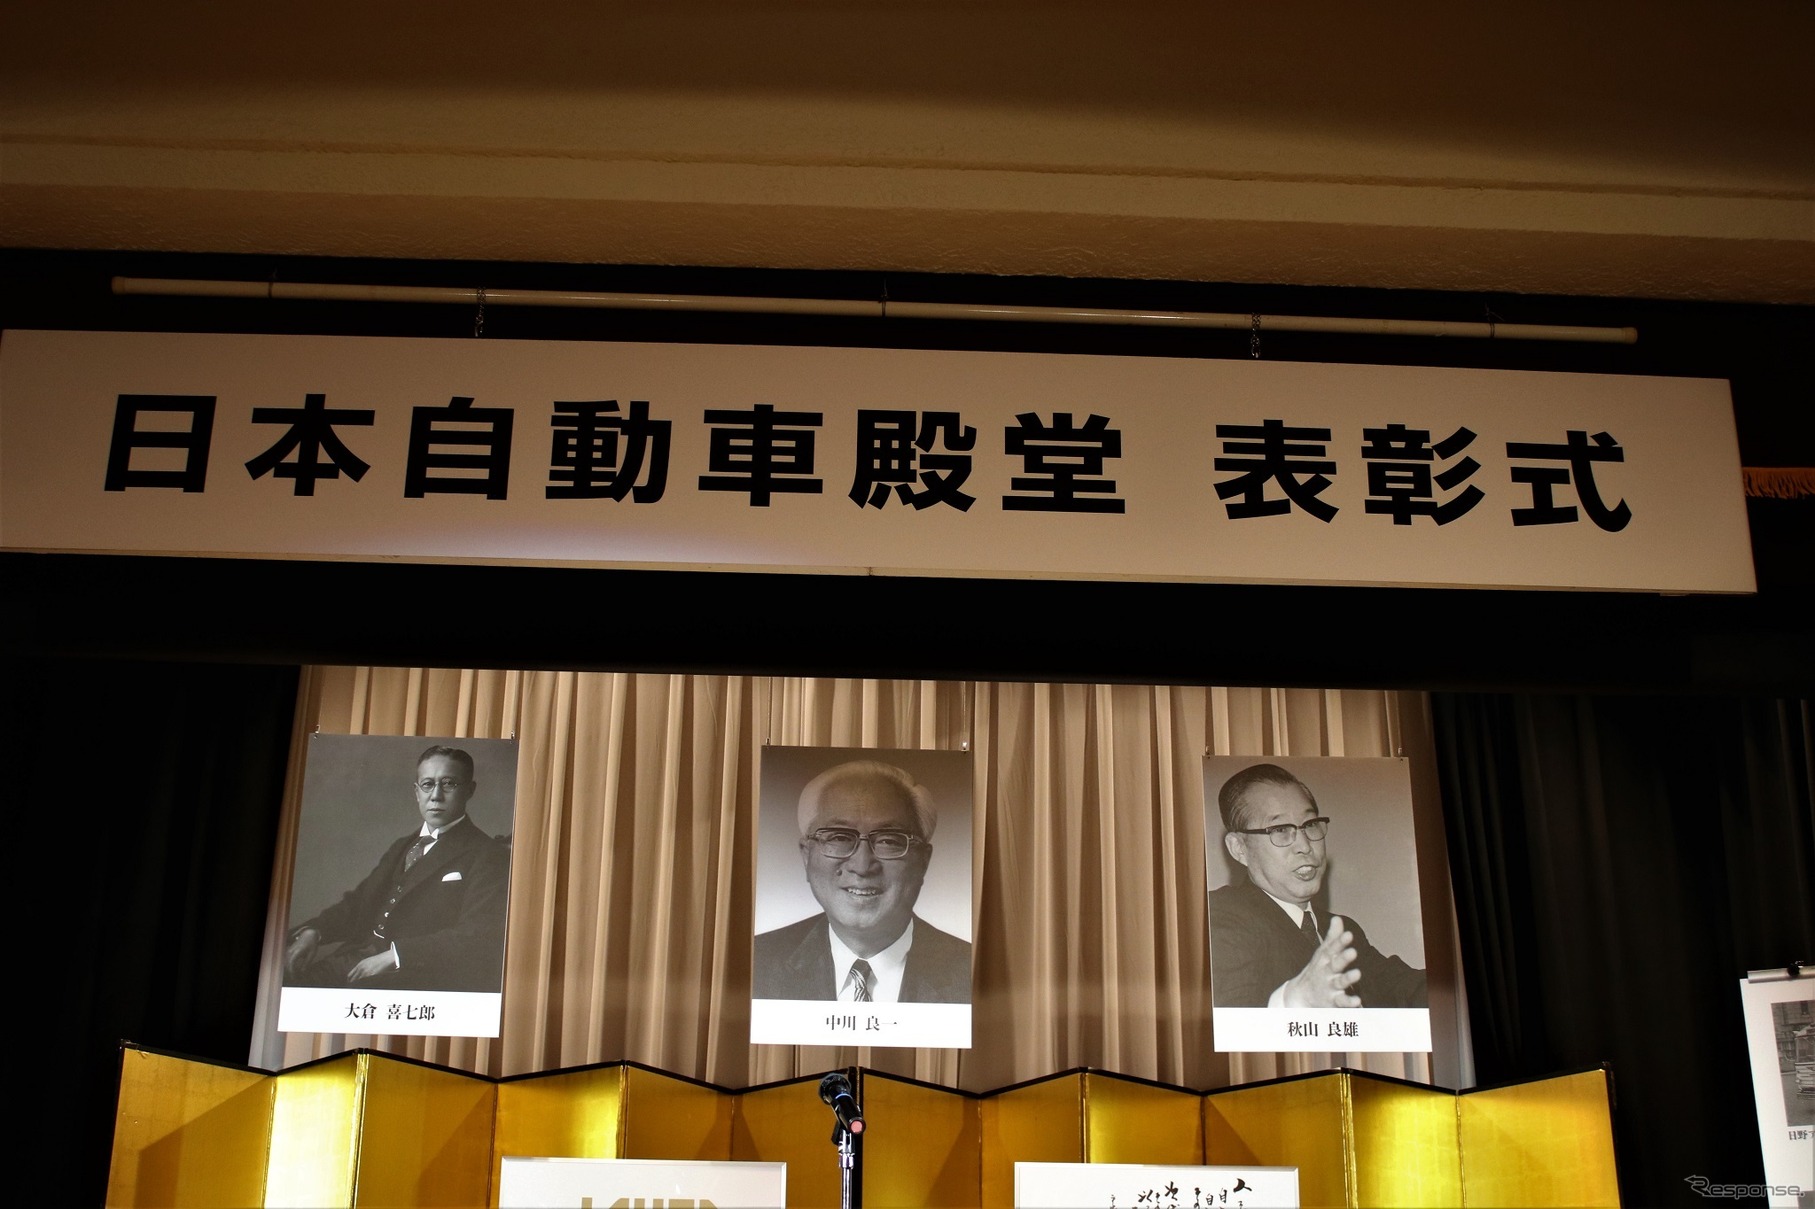 2018日本自動車殿堂表彰式 左から大倉喜七郎氏、中川良一氏、秋山良雄氏